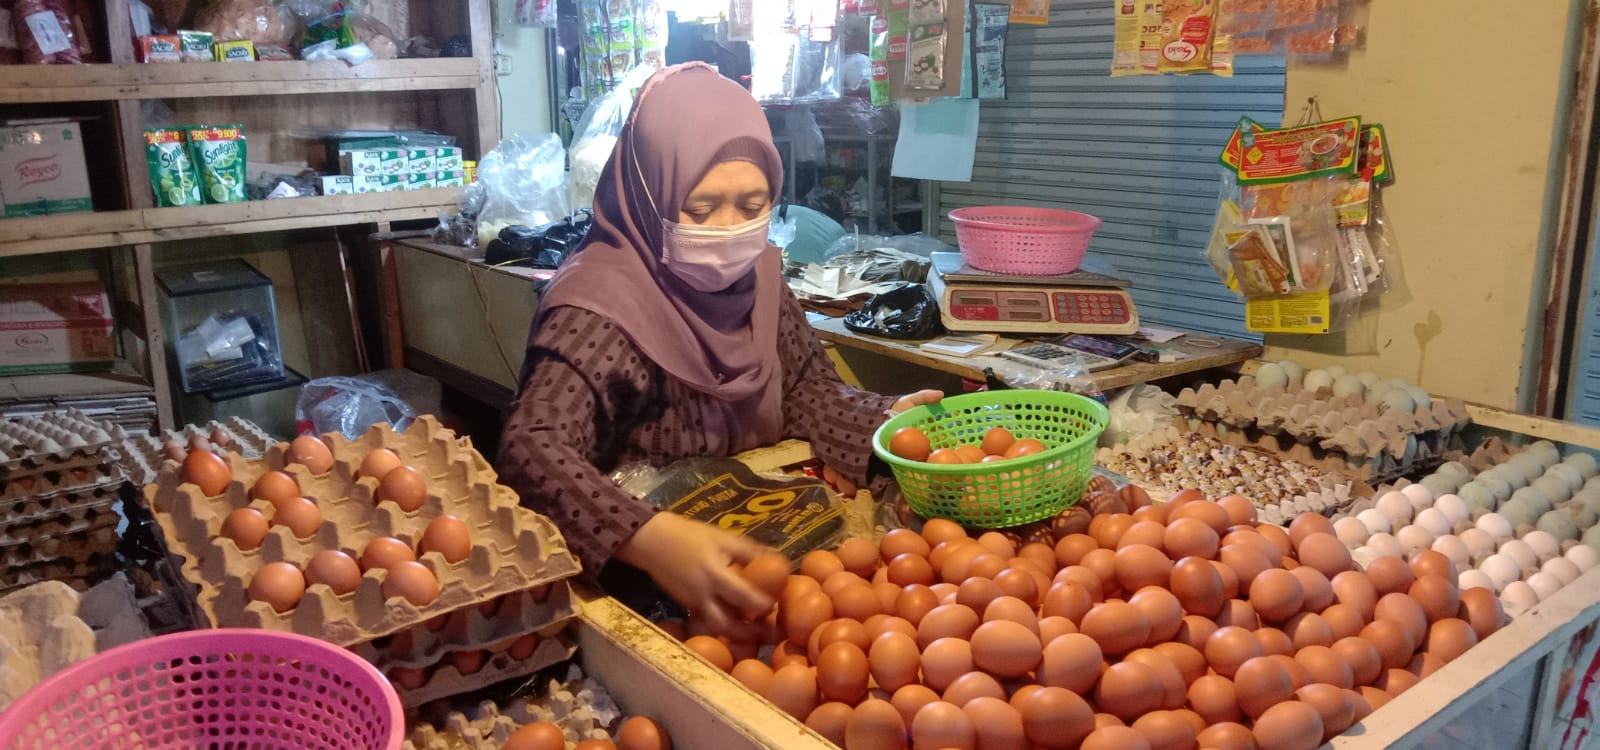 Ilustrasi penjualan telur di pasar. Jokowi Komentari harga telur yang melambung tinggi.Foto. Sandi Nugraha.